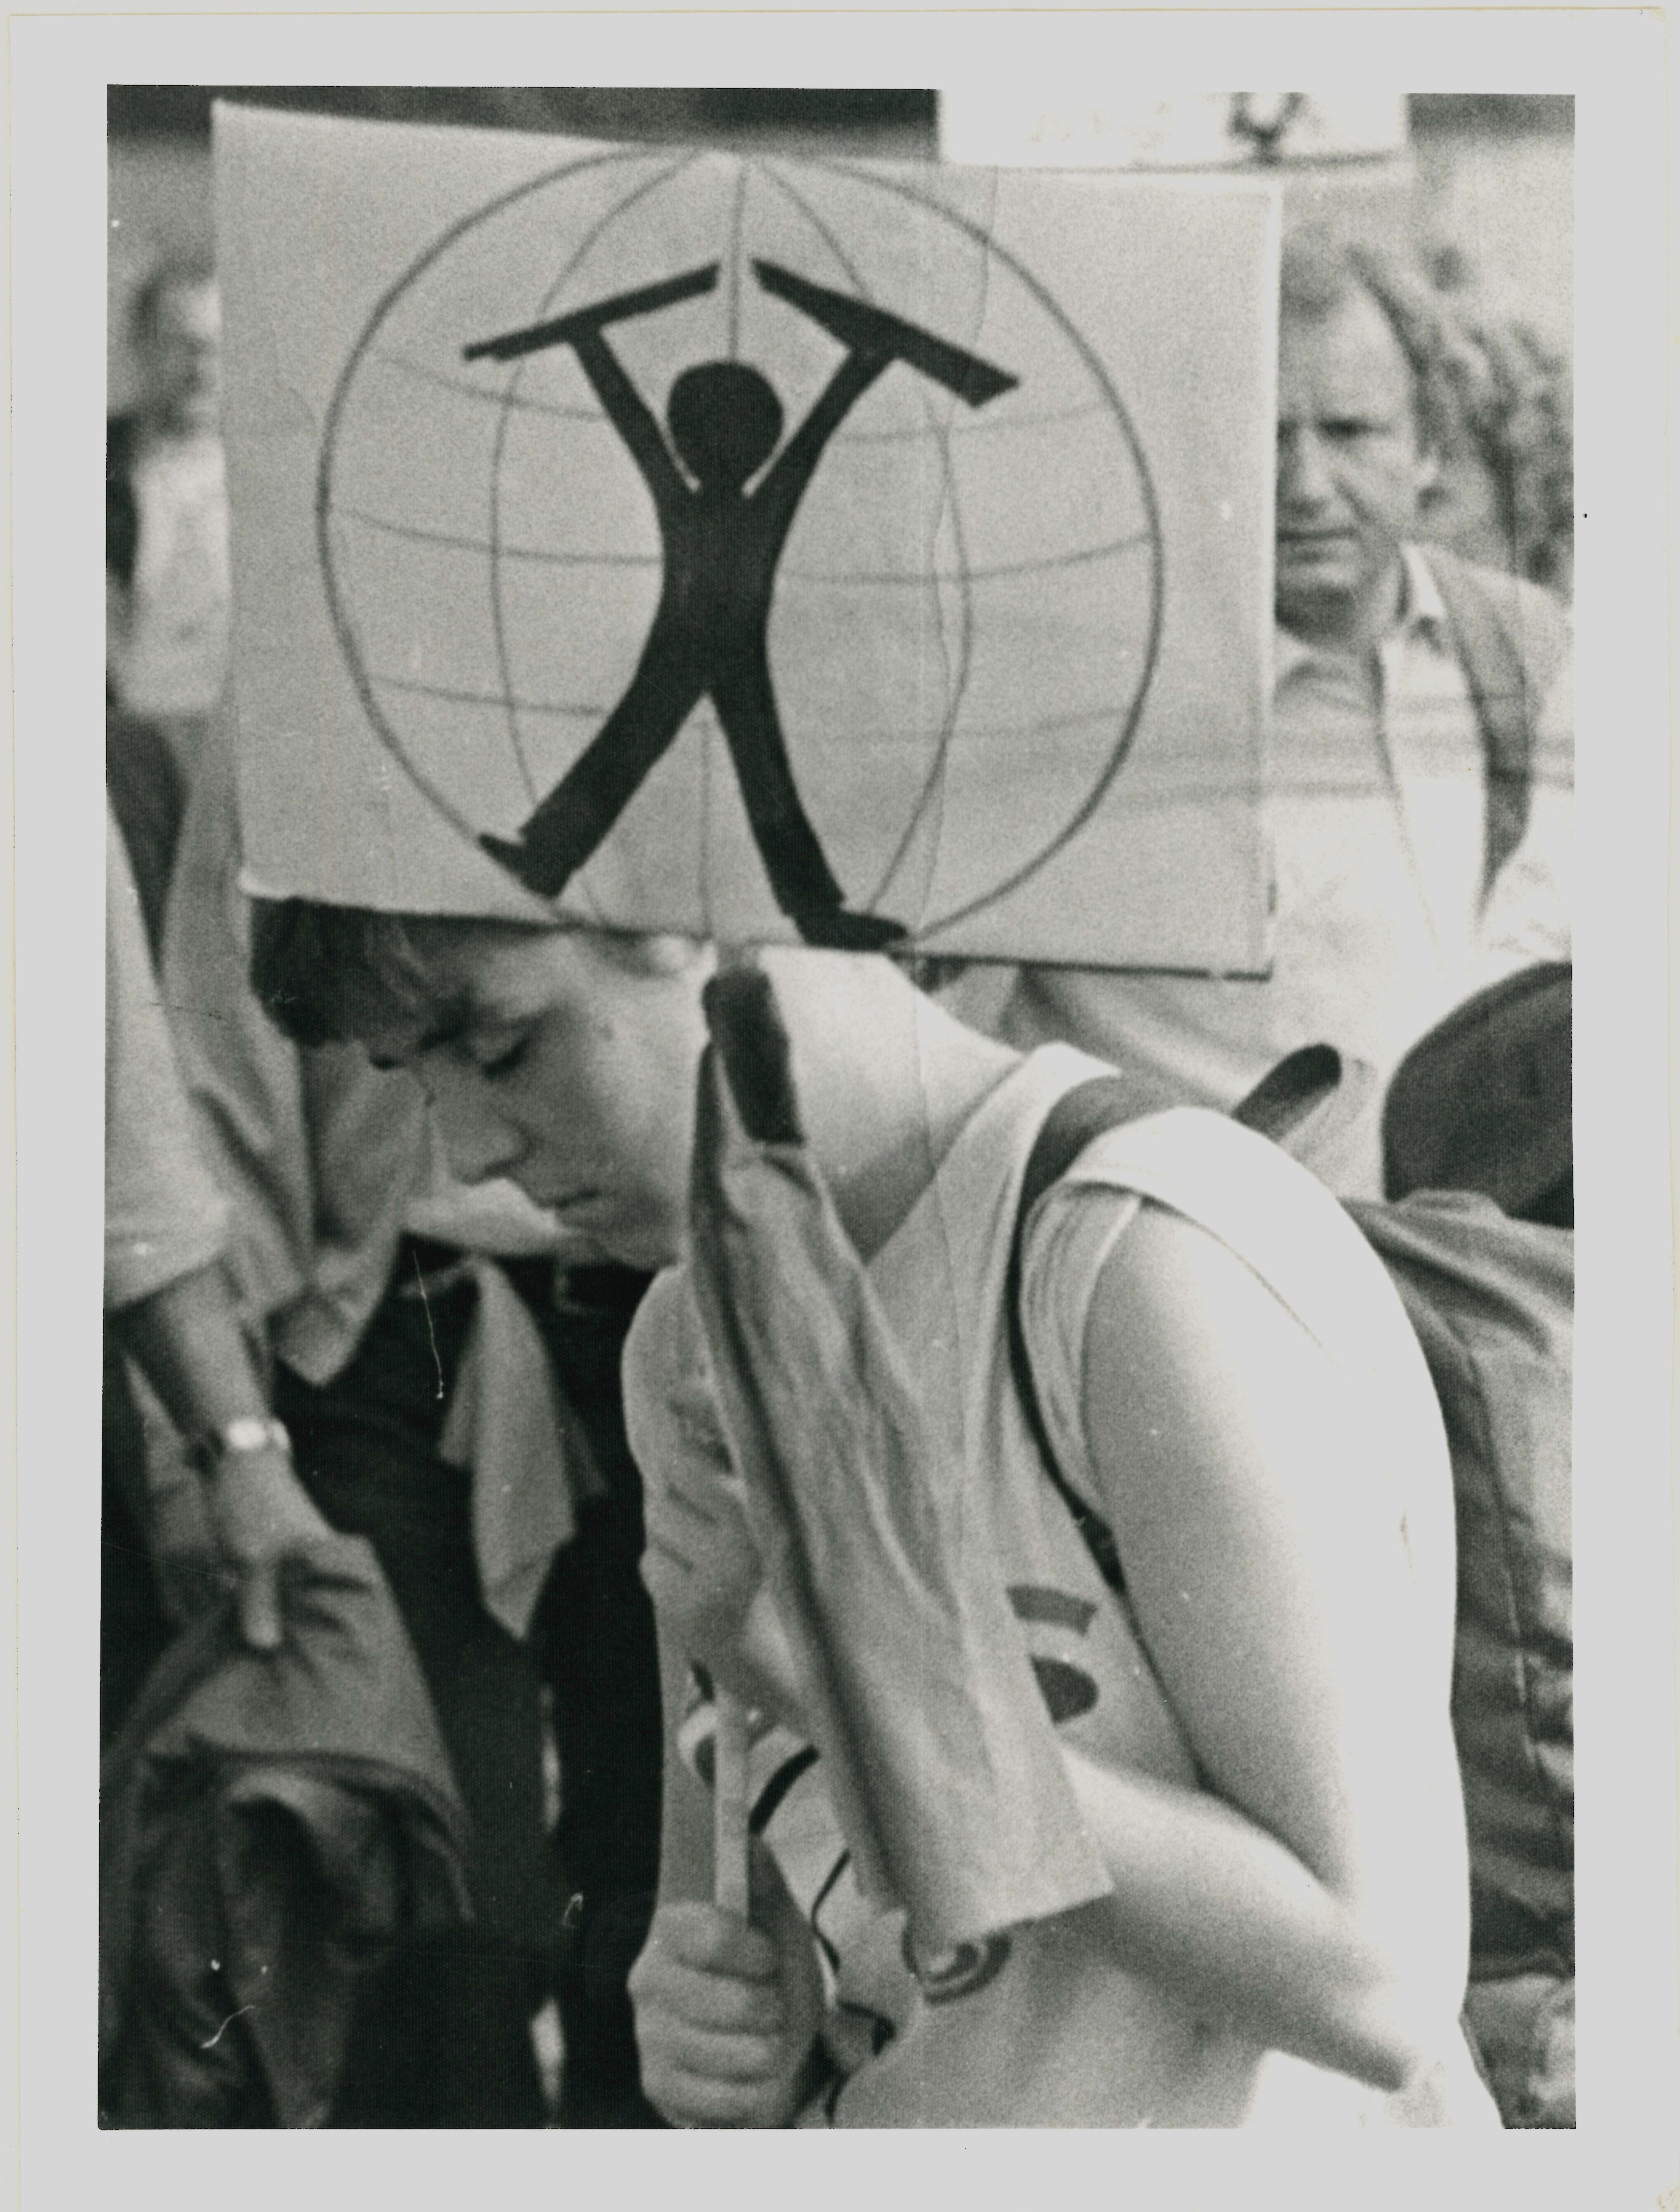 Olof-Palme-Marsch 1987: Plakat mit "Mann vor Weltkugel" (DDR Geschichtsmuseum im Dokumentationszentrum Perleberg CC BY-SA)